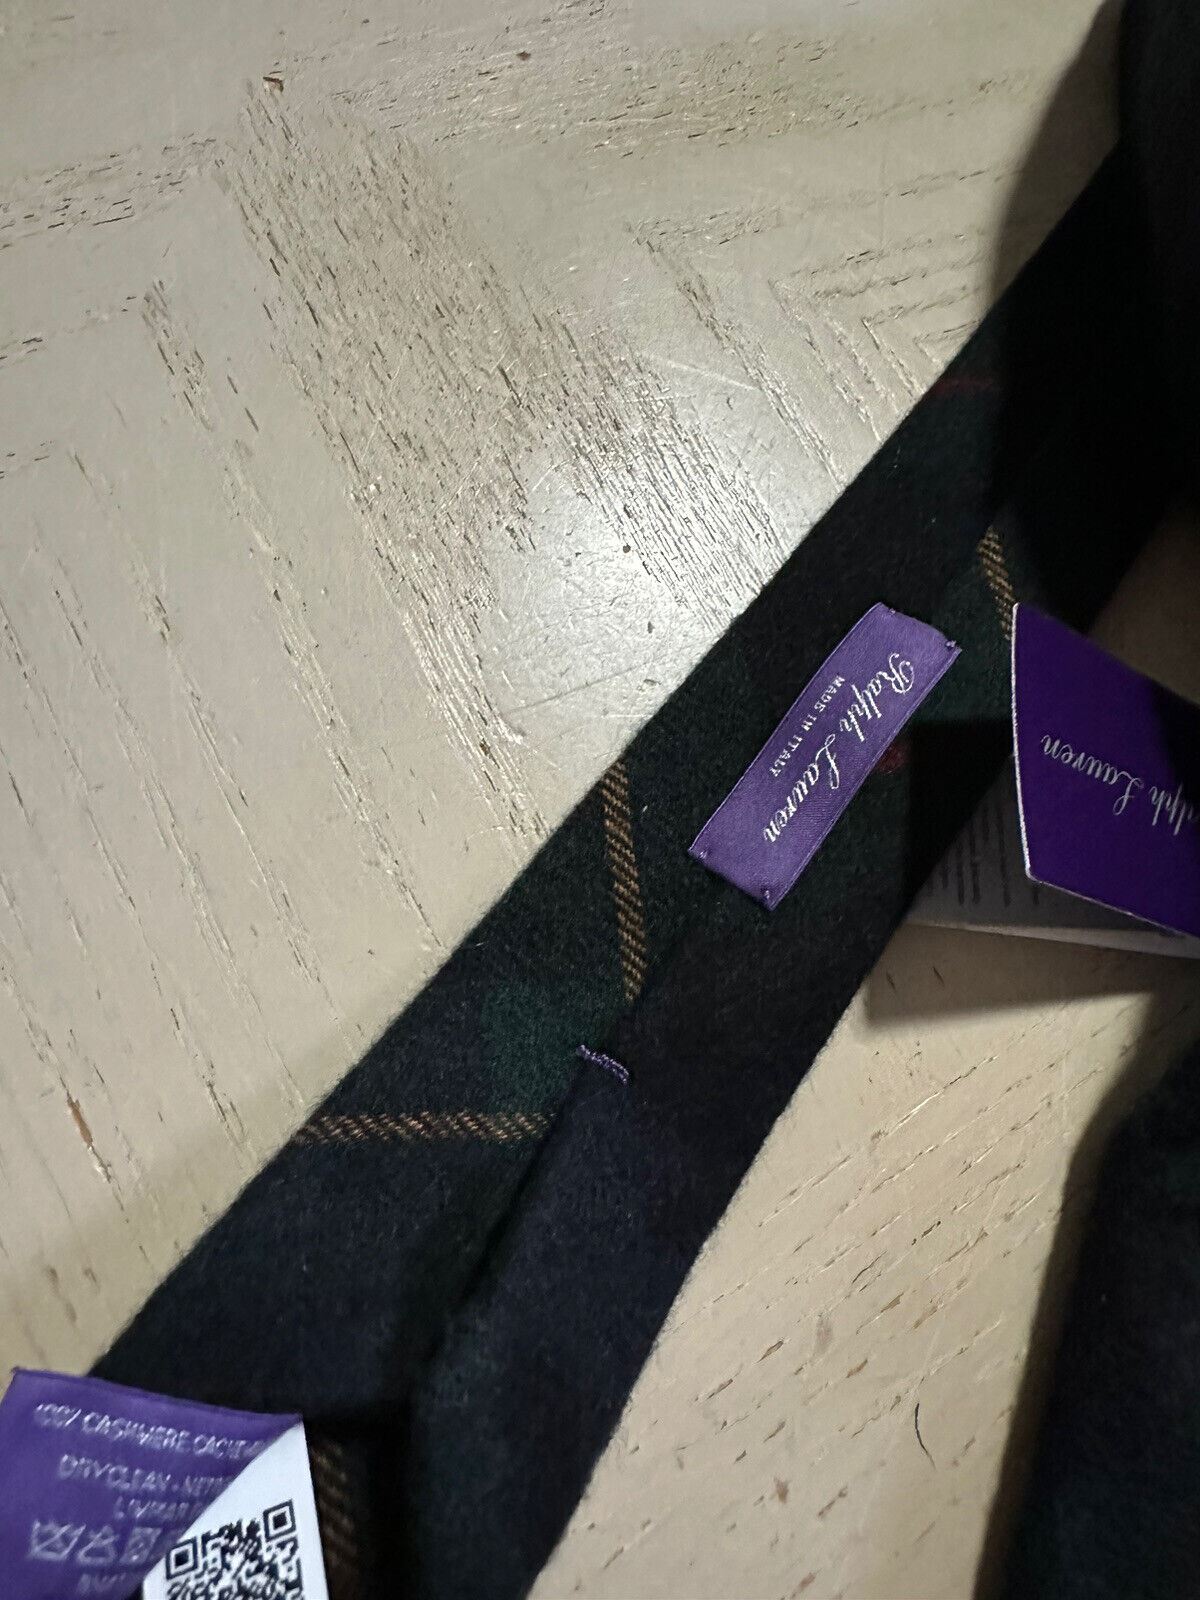 Neu: 265 $ Ralph Lauren Purple Label Kaschmirhalskrawatte Gr/Y/R Handgefertigt in Italien